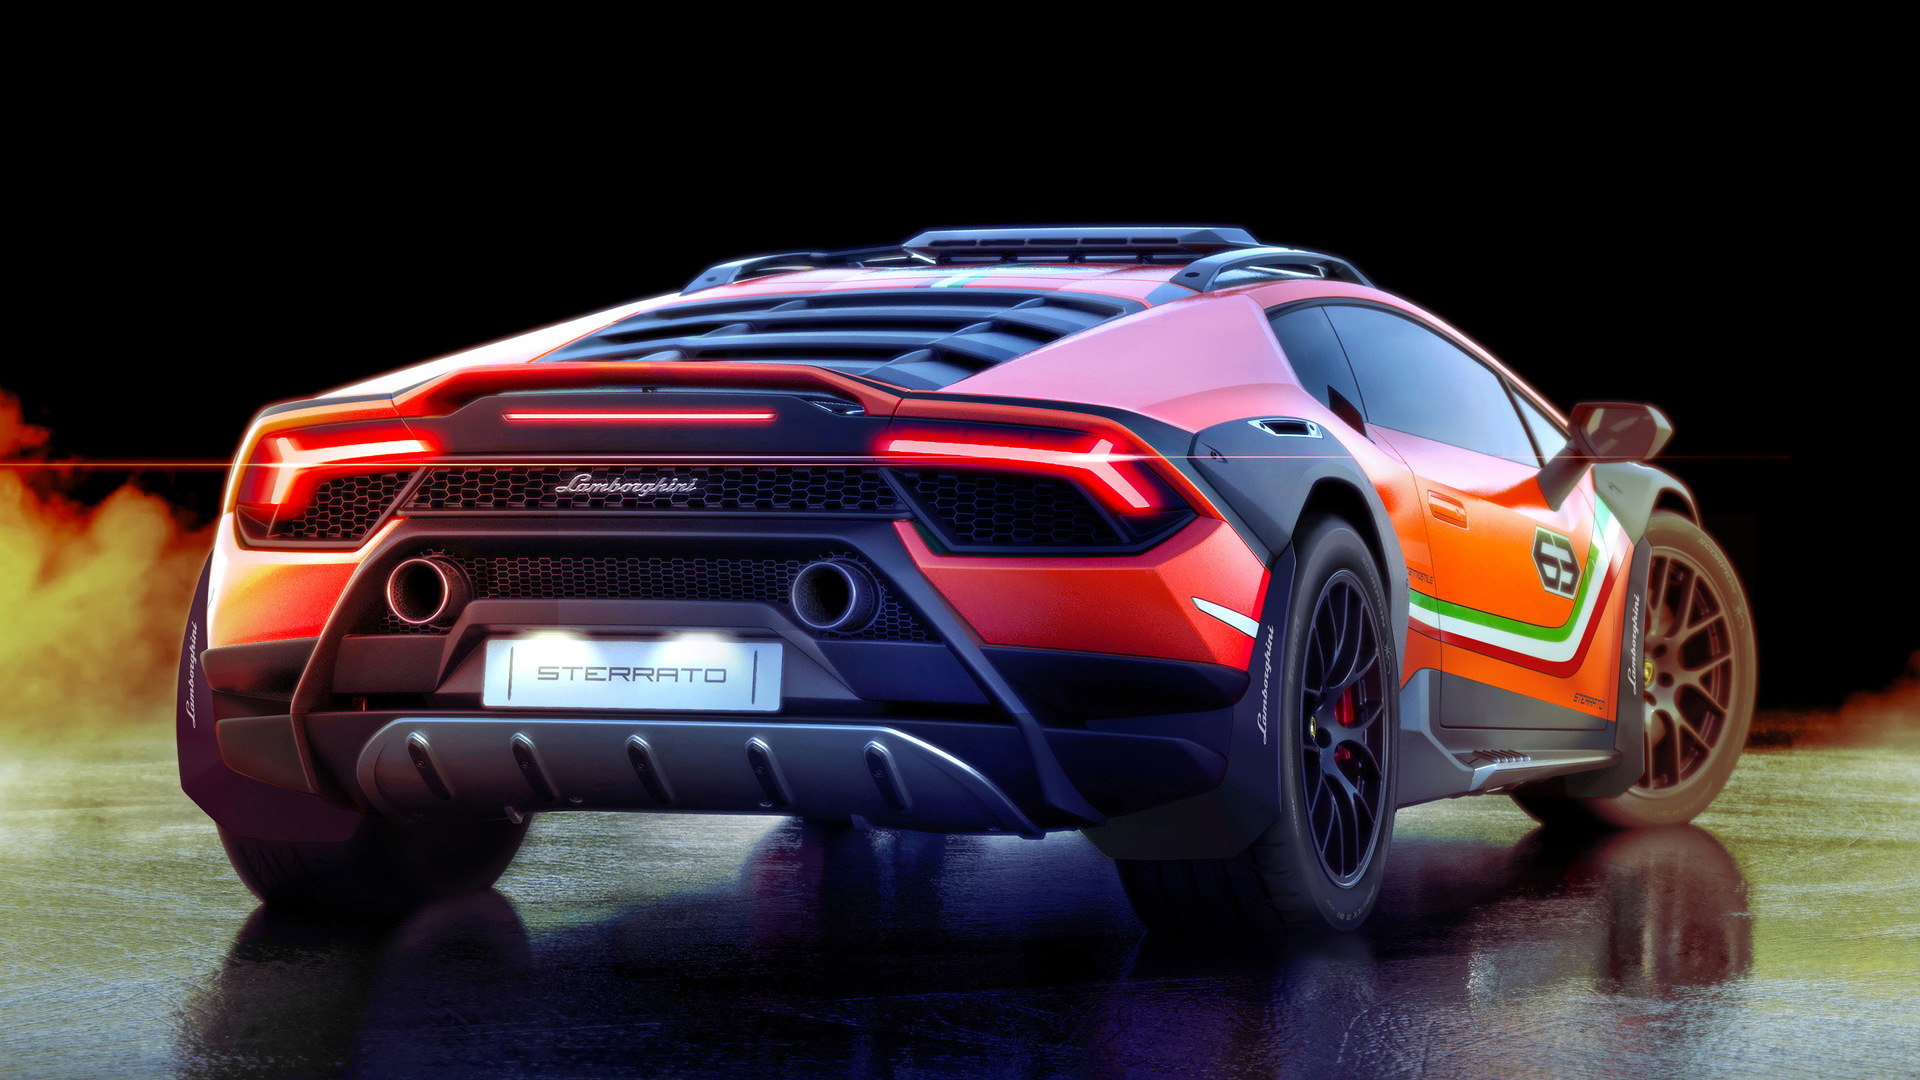 Off-road Lamborghini Huracán Sterrato concept might see ...